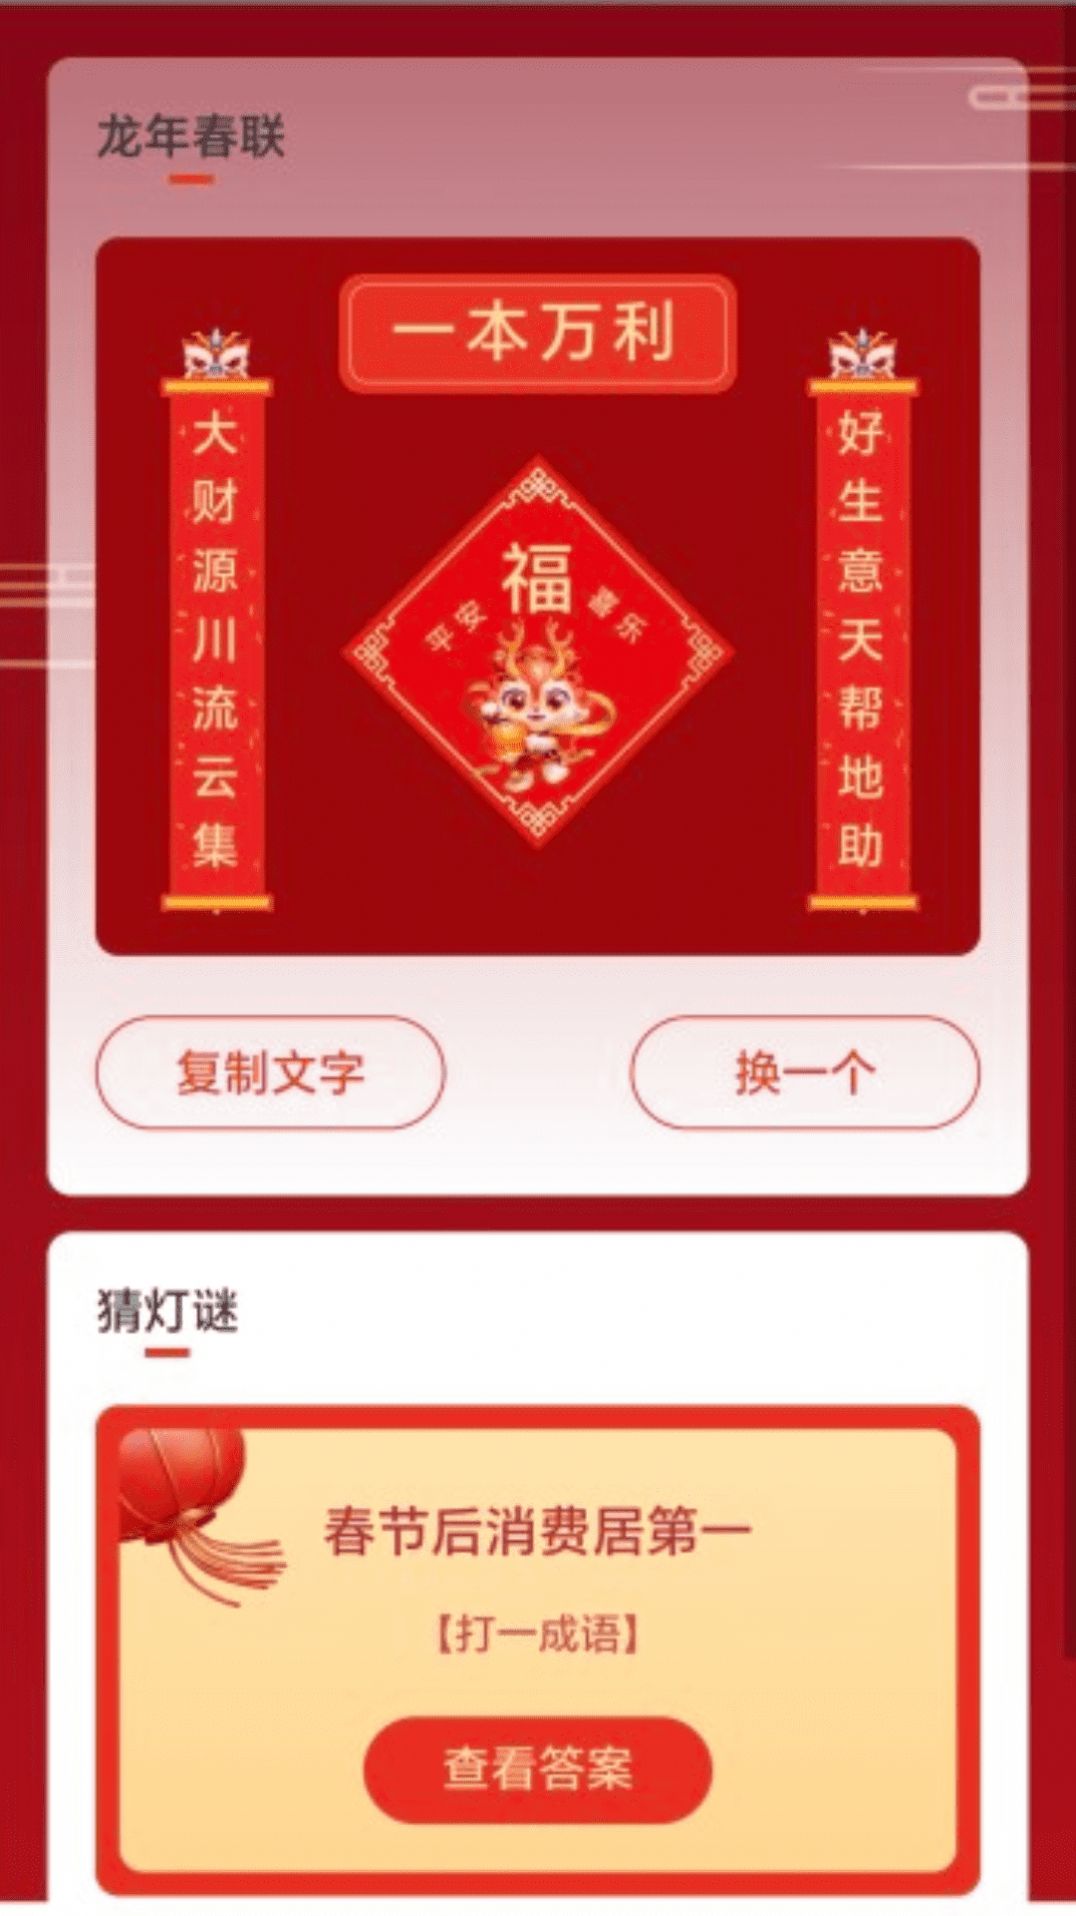 福龙WiFi官方版下载手机软件app截图